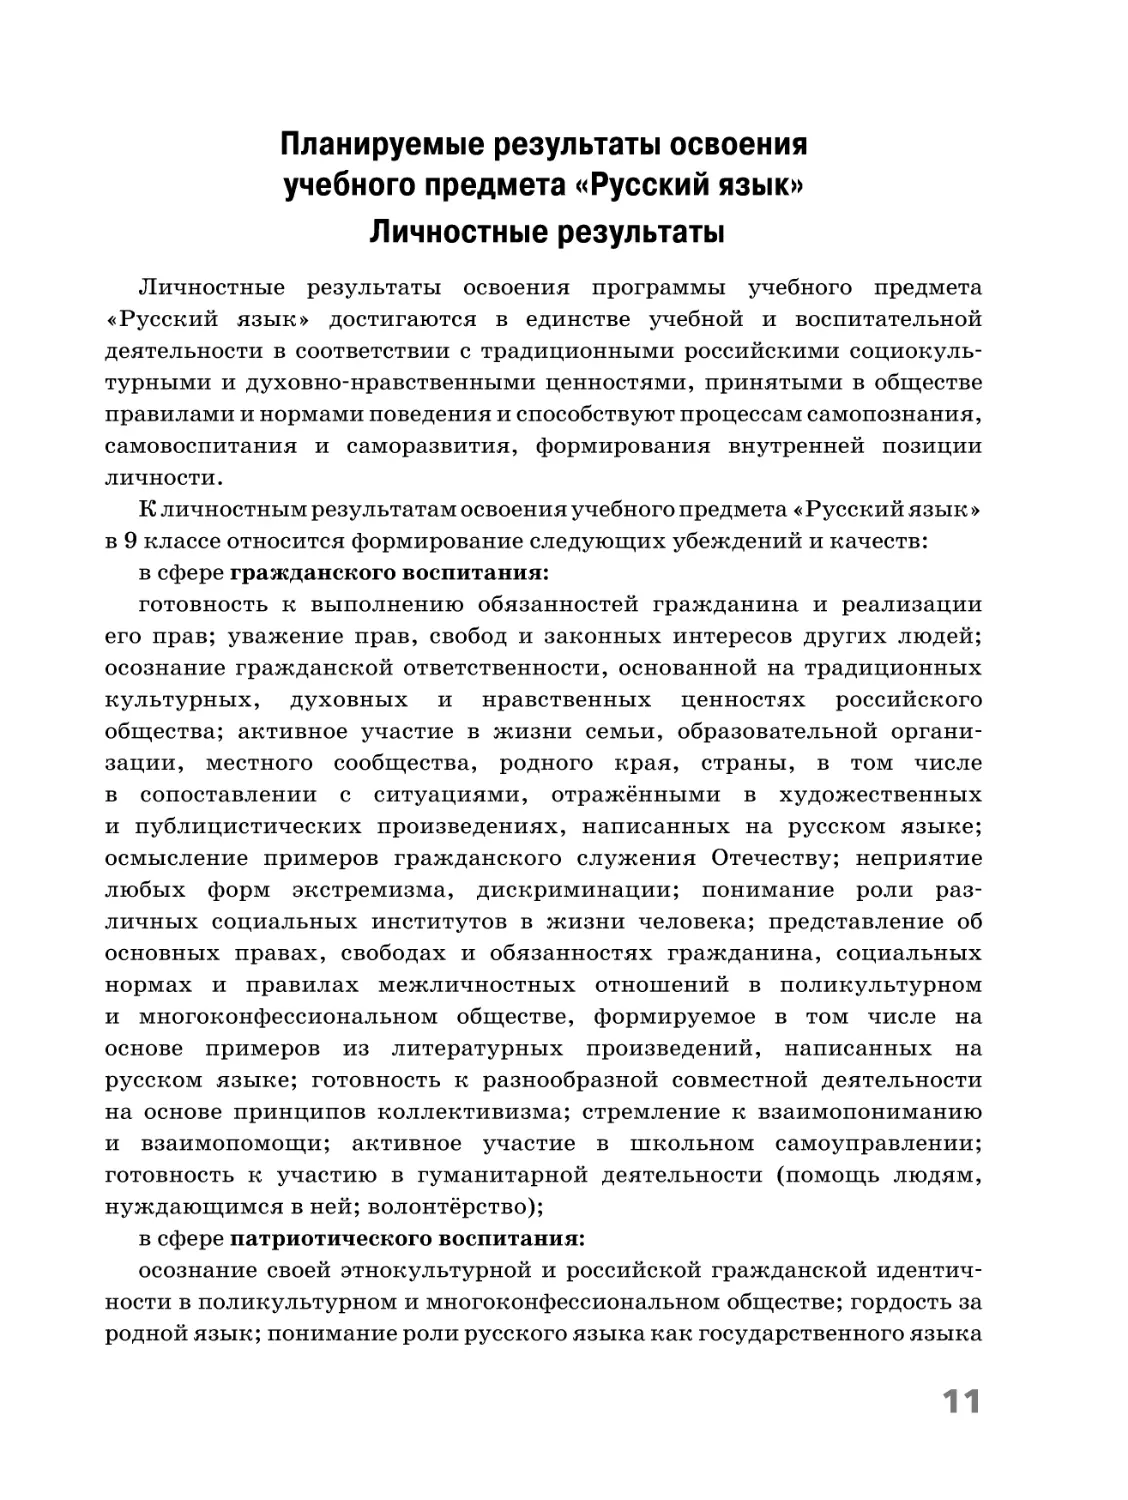 Планируемые результаты освоения учебного предмета «Русский язык»
Личностные результаты